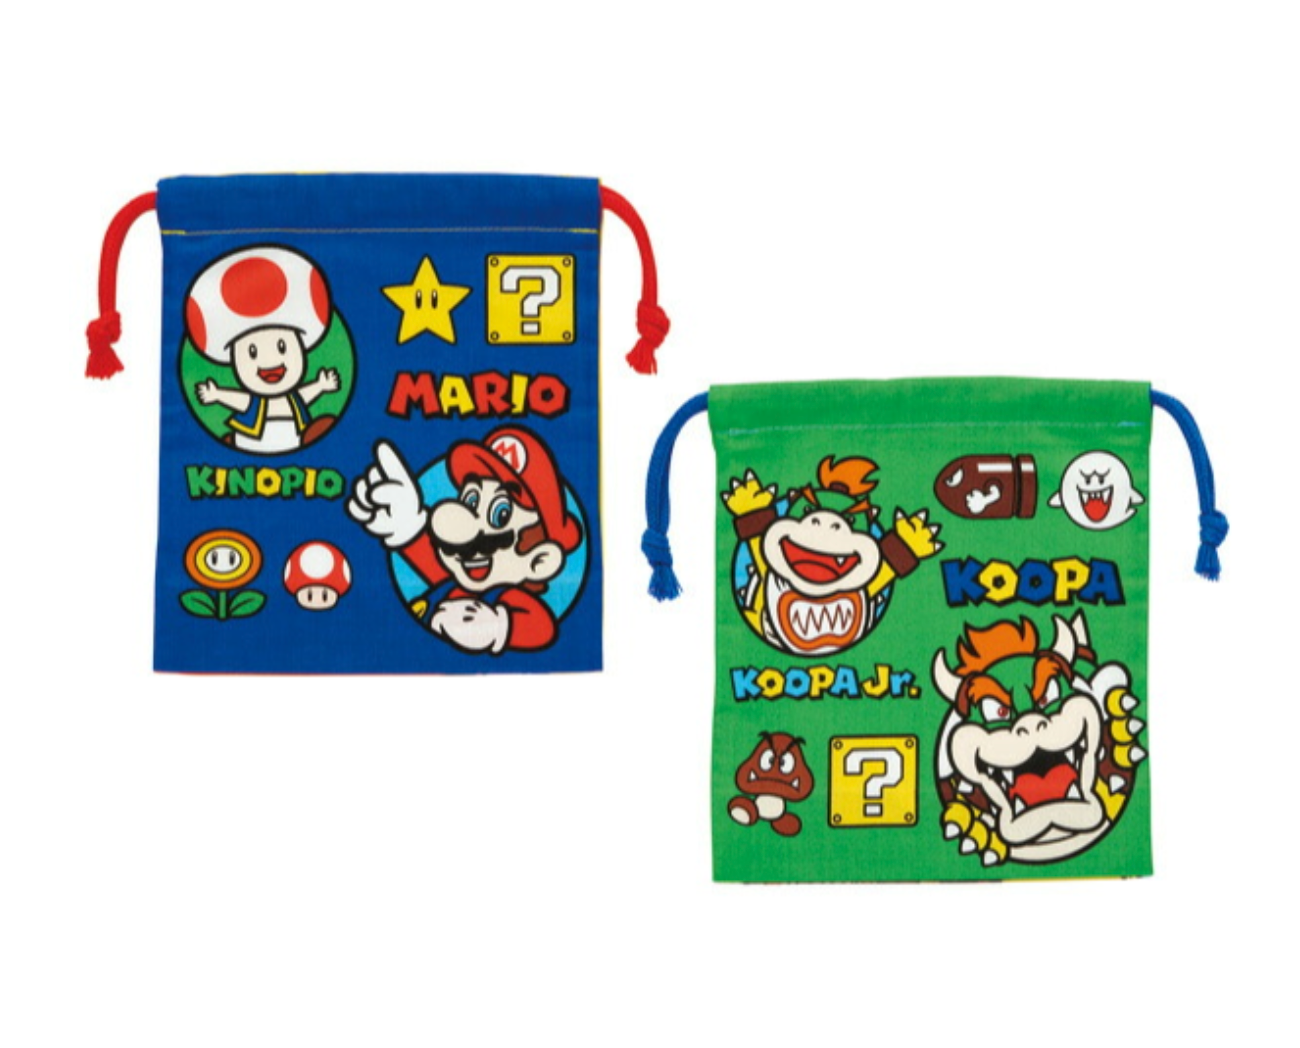 Super Mario Drawstring Lunch Bag – Bento&co PRO